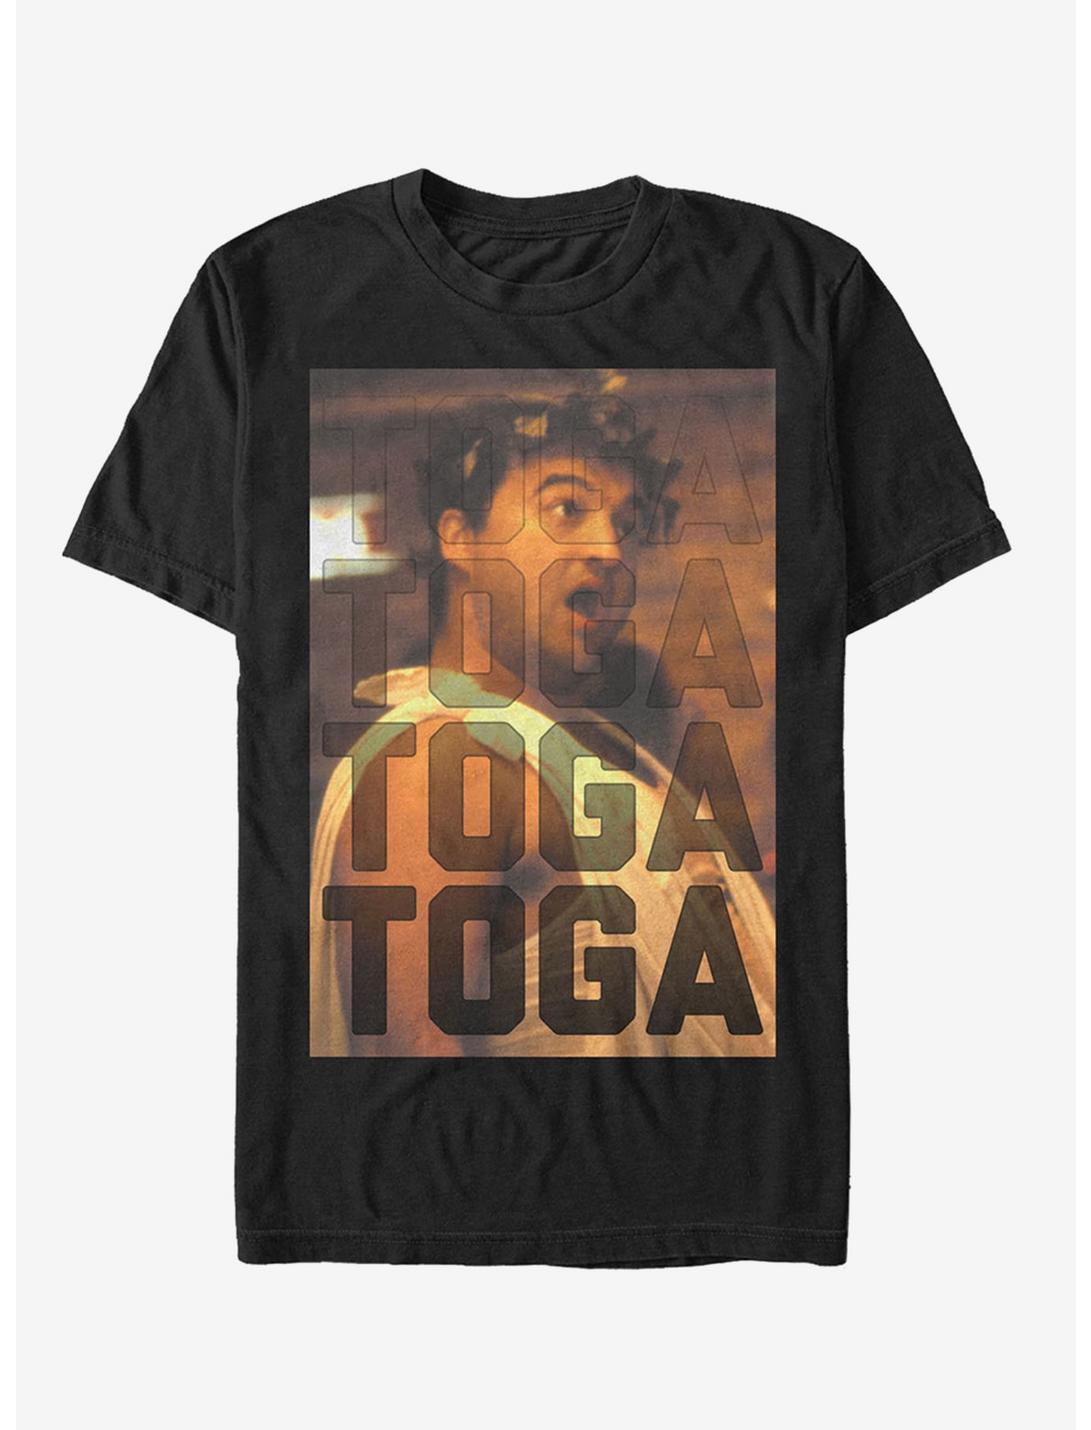 Bluto Toga T-Shirt, BLACK, hi-res